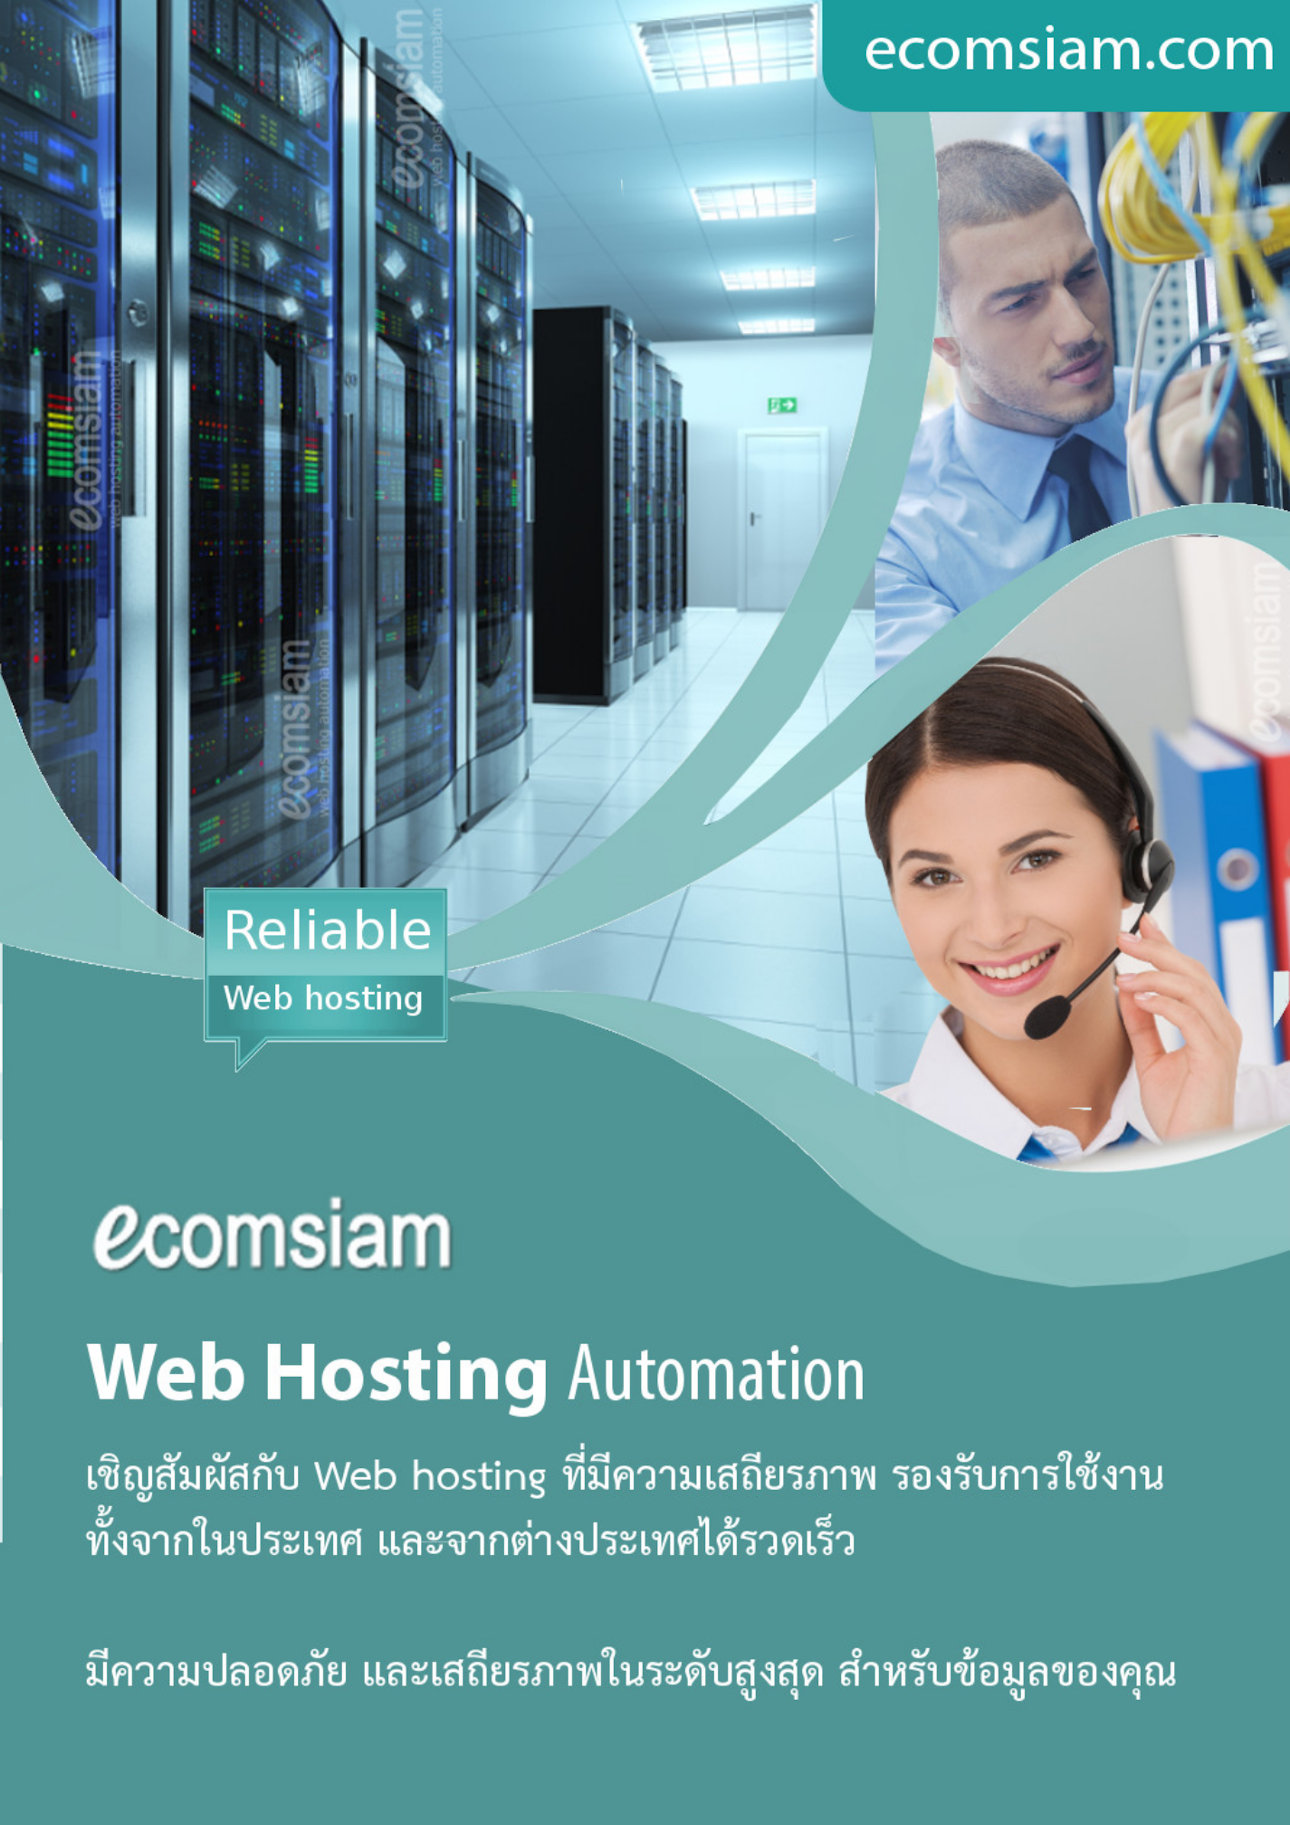 โบรชัวรบริการ  Web Hosting thai คุณภาพ บริการดี พื้นที่มาก  คุณภาพสูง  hosting ฟรีโดเมน ฟรี SSL ระบบควบคุมจัดการ Web hosting ไทย ที่ง่าย สะดวก และปลอดภัย อีเมลและเว็บไซต์สำหรับธุรกิจของคุณ มีระบบเก็บ log file ตามกฏหมาย มีความปลอดภัยในการใช้งาน พร้อมมีระบบสำรองข้อมูลรายวัน (daily backup) และ สำรองข้อมูลรายสัปดาห์ (weekly backup) ระบบป้องกันไวรัสจากอีเมล์ (virus protection) พร้อมระบบกรองสแปมส์เมล์หรือกรองอีเมล์ขยะ (Spammail filter) เริ่มต้นเพียง 2,200 บาทต่อปี  โทร.หาเราตอนนี้เลย  02-9682665   บริการลูกค้าดี ดูแลดี  แนะนำเว็บโฮสติ้ง โดย ecomsiam.com